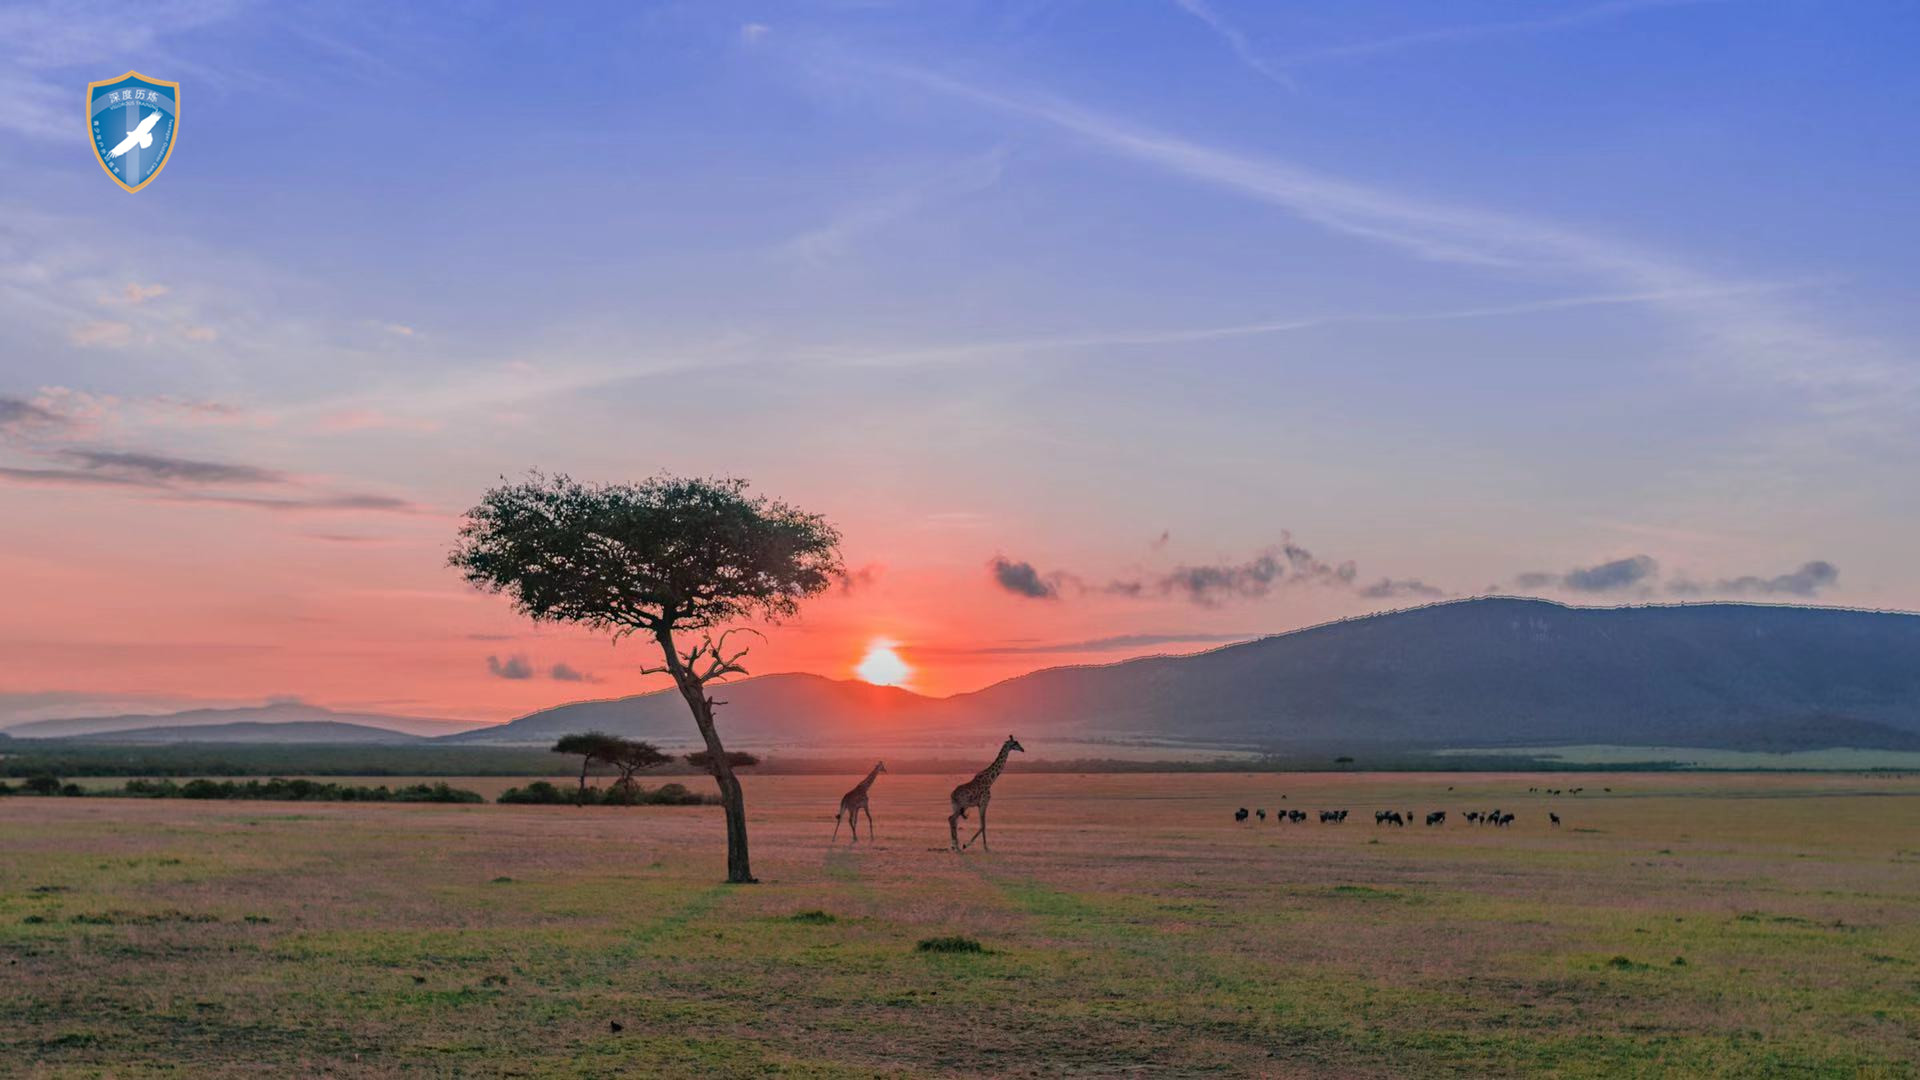 肯尼亚生态训练营 - 非洲草原的动物们